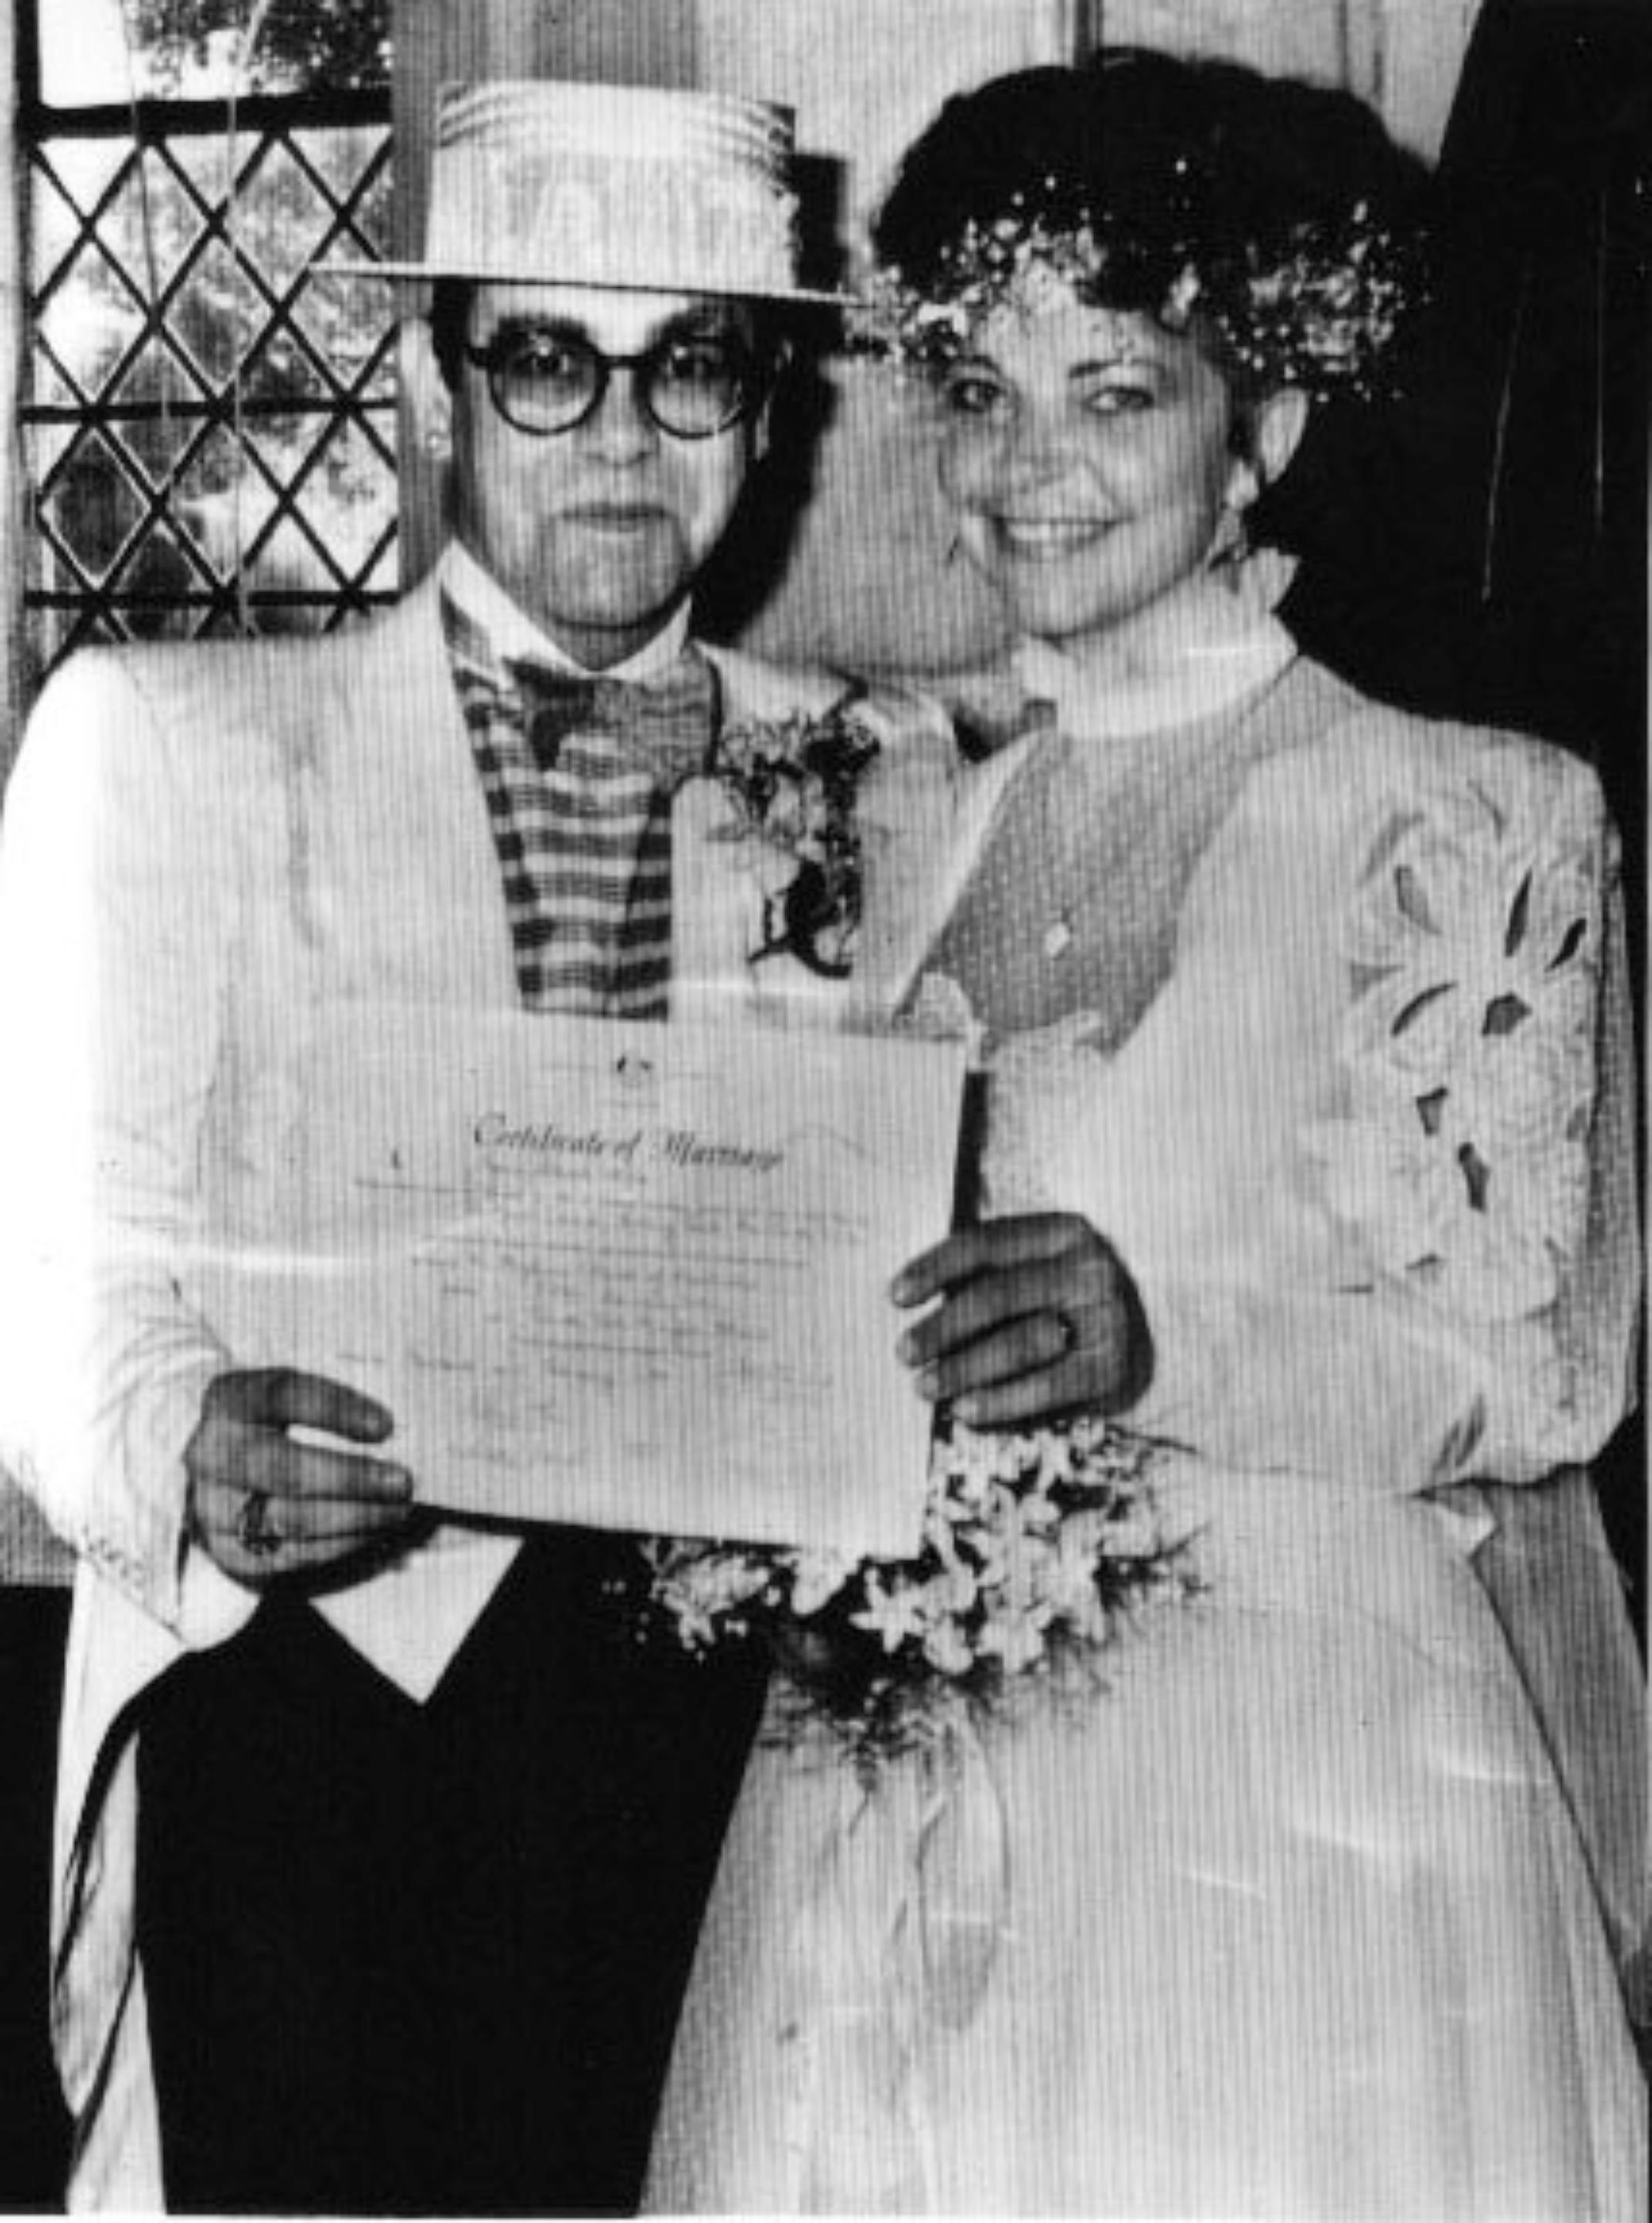 Unknown Portrait Photograph - Elton John's Certificate of Marriage 1984 - Vintage Photo - 1980s